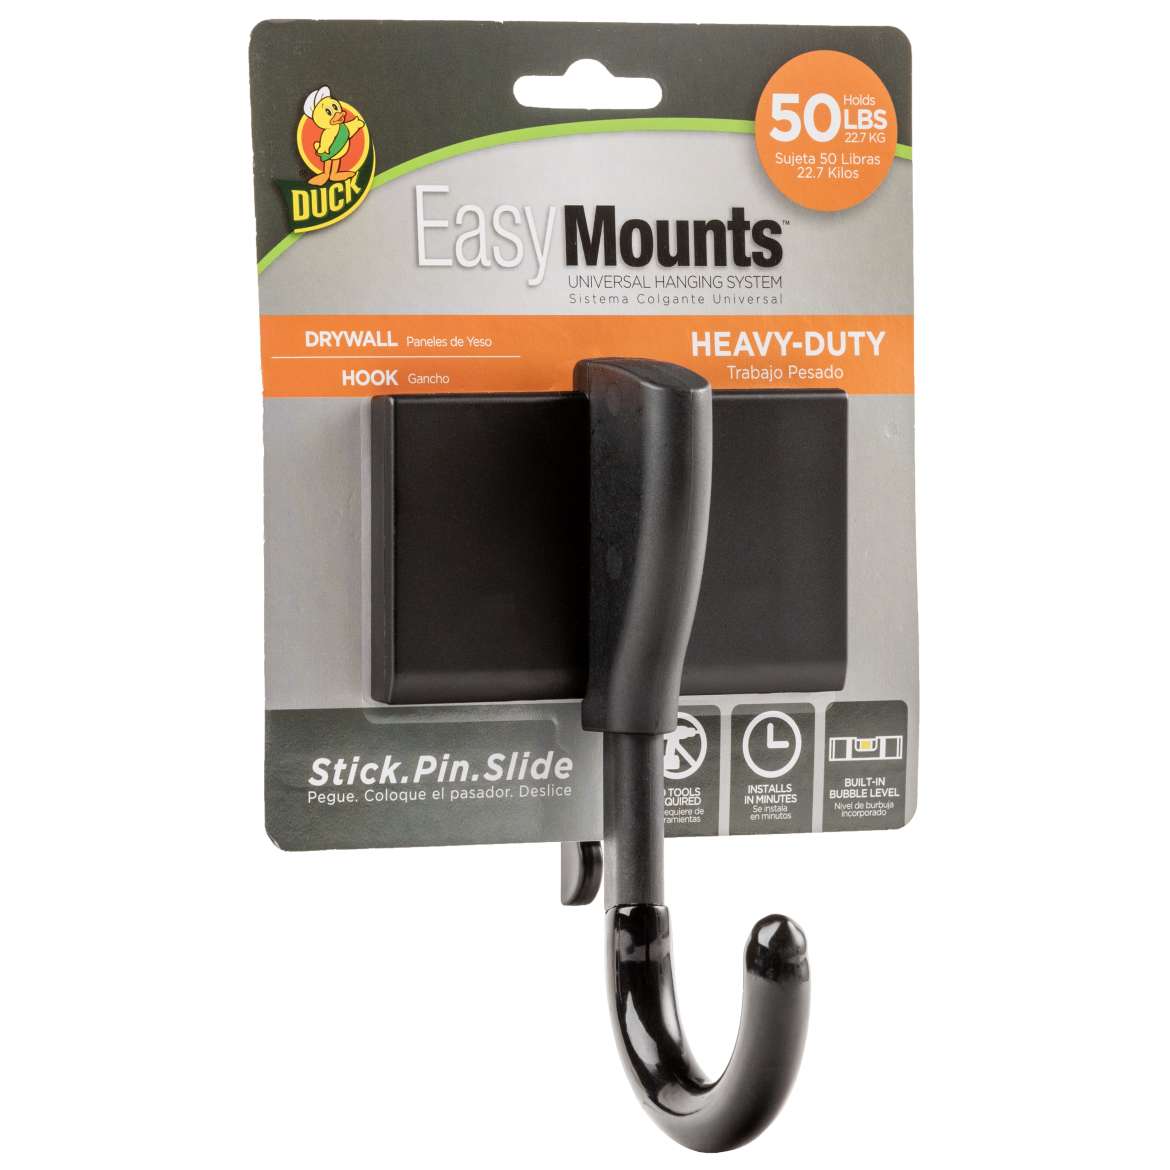 Duck® EasyMounts™ Heavy-Duty Drywall Hooks